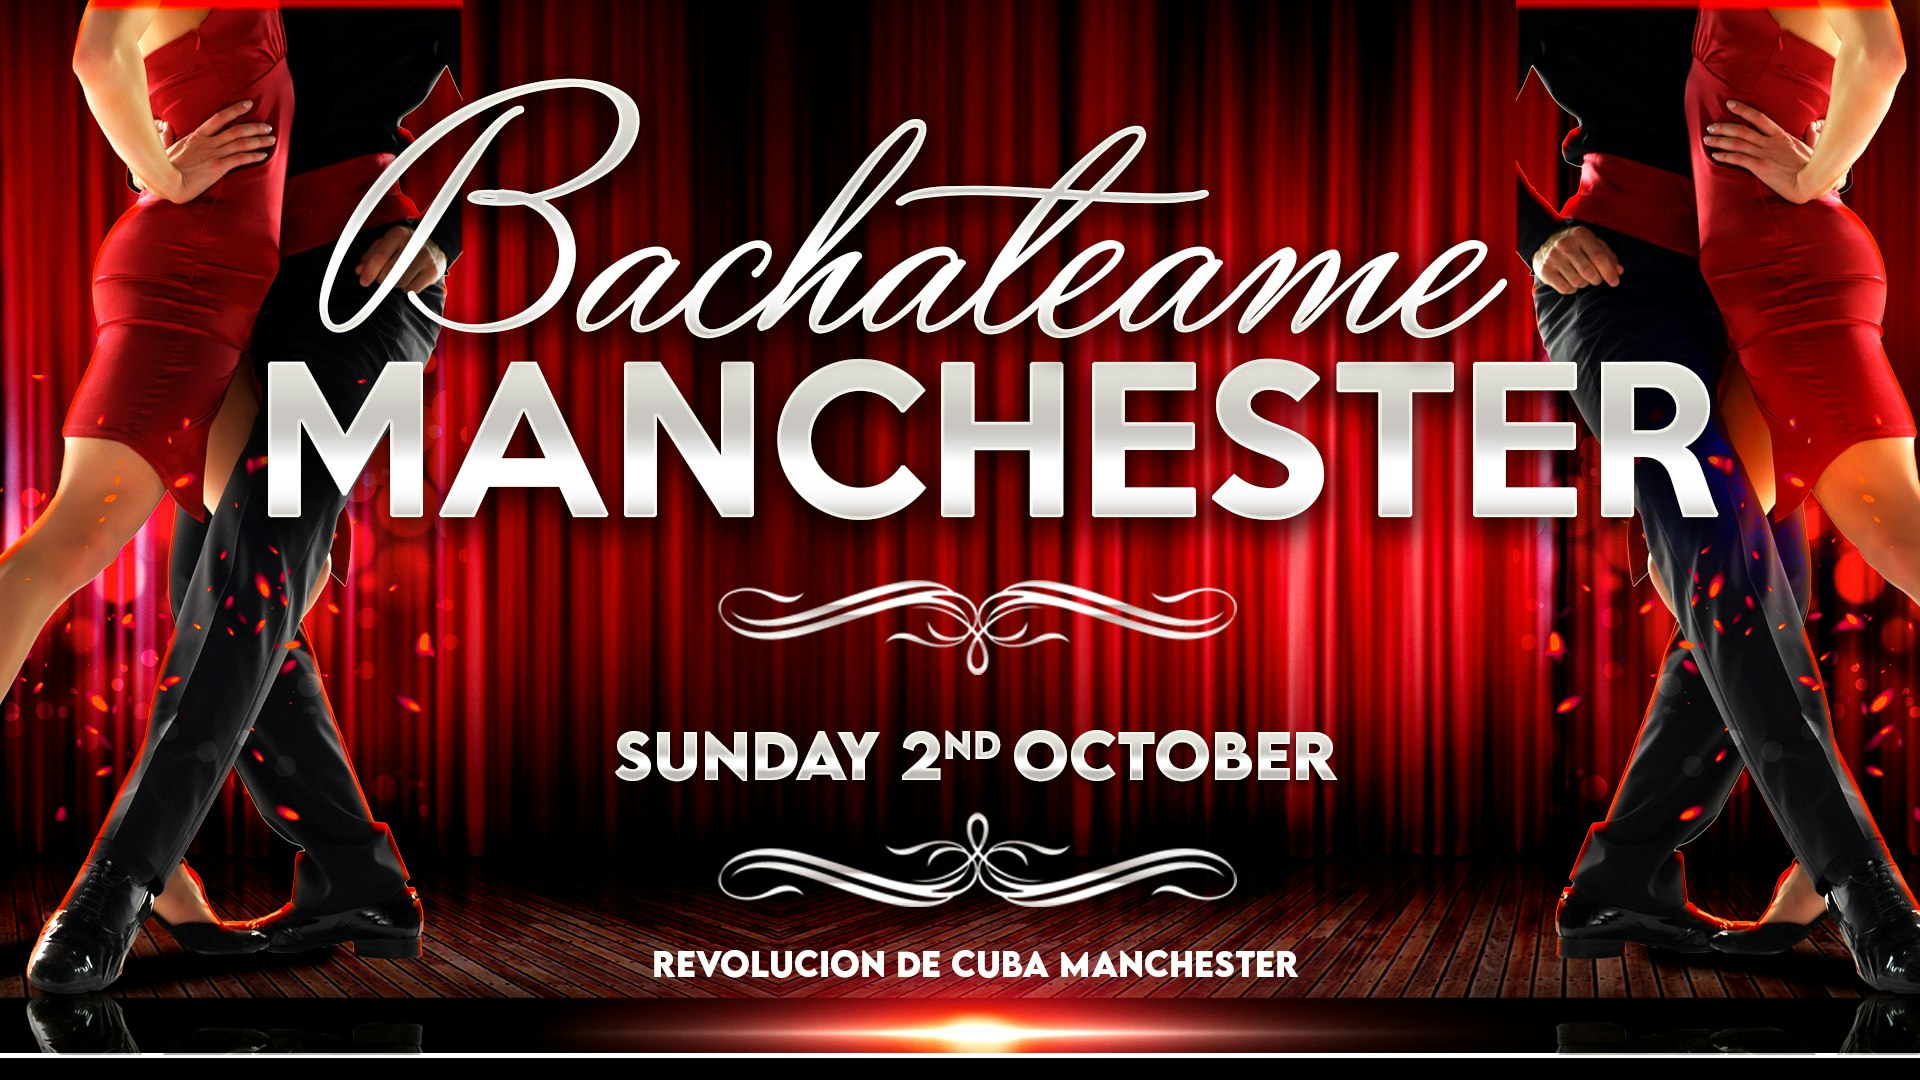 Bachateame Manchester – Sunday 2nd October  | Revolucion de Cuba